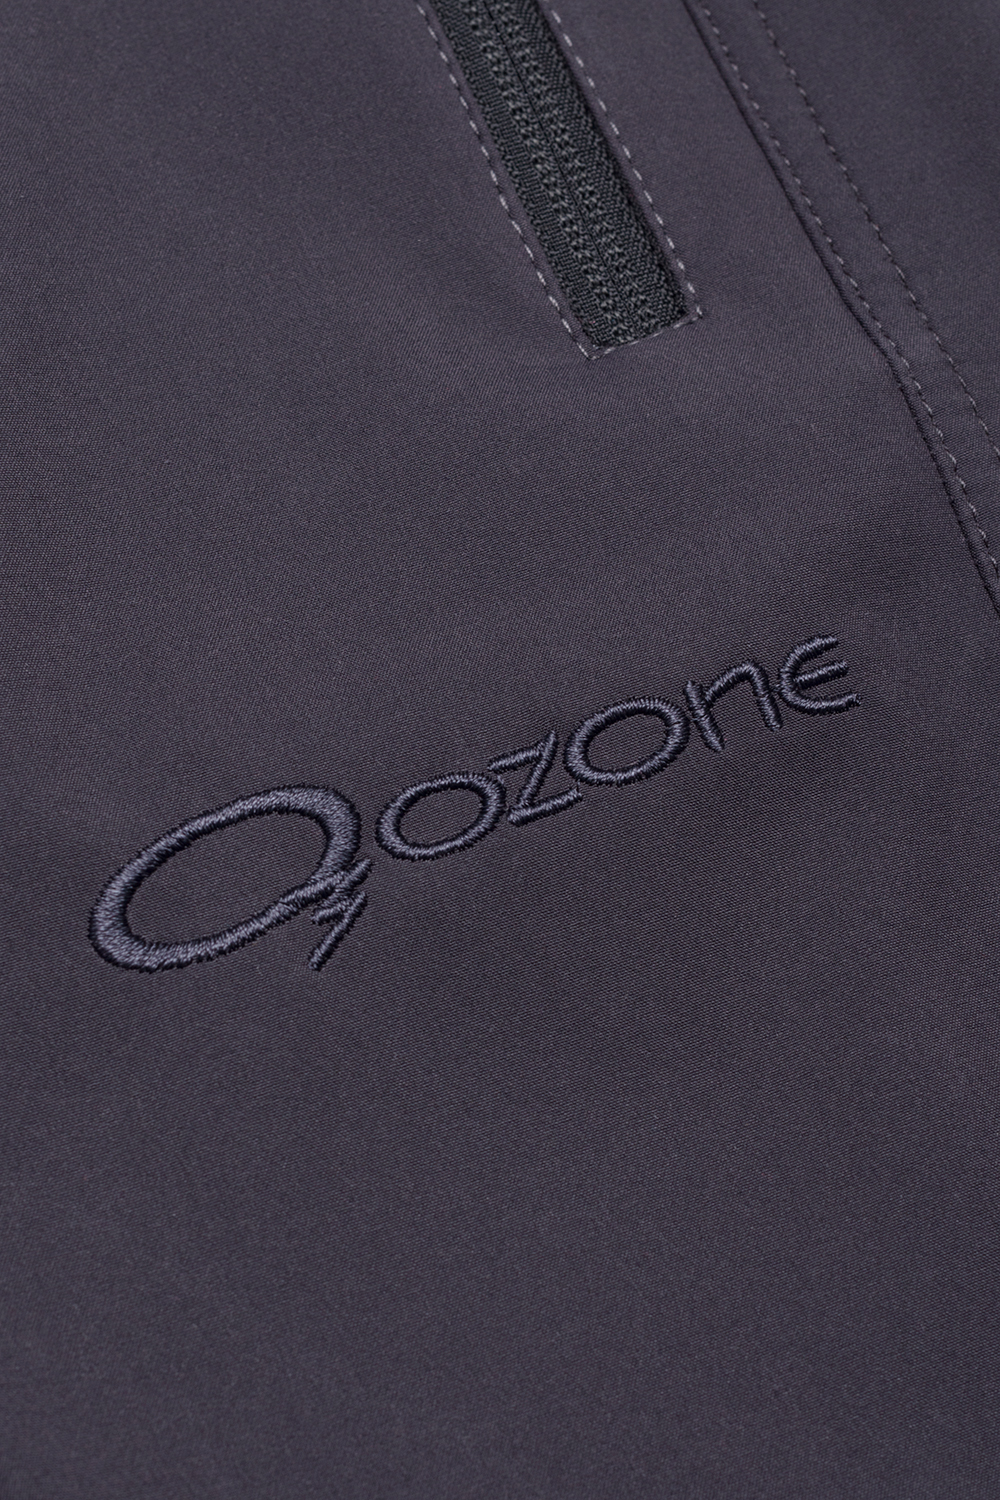 Женские брюки Cozy из soft shell купить в магазине экипировки O3 ozone